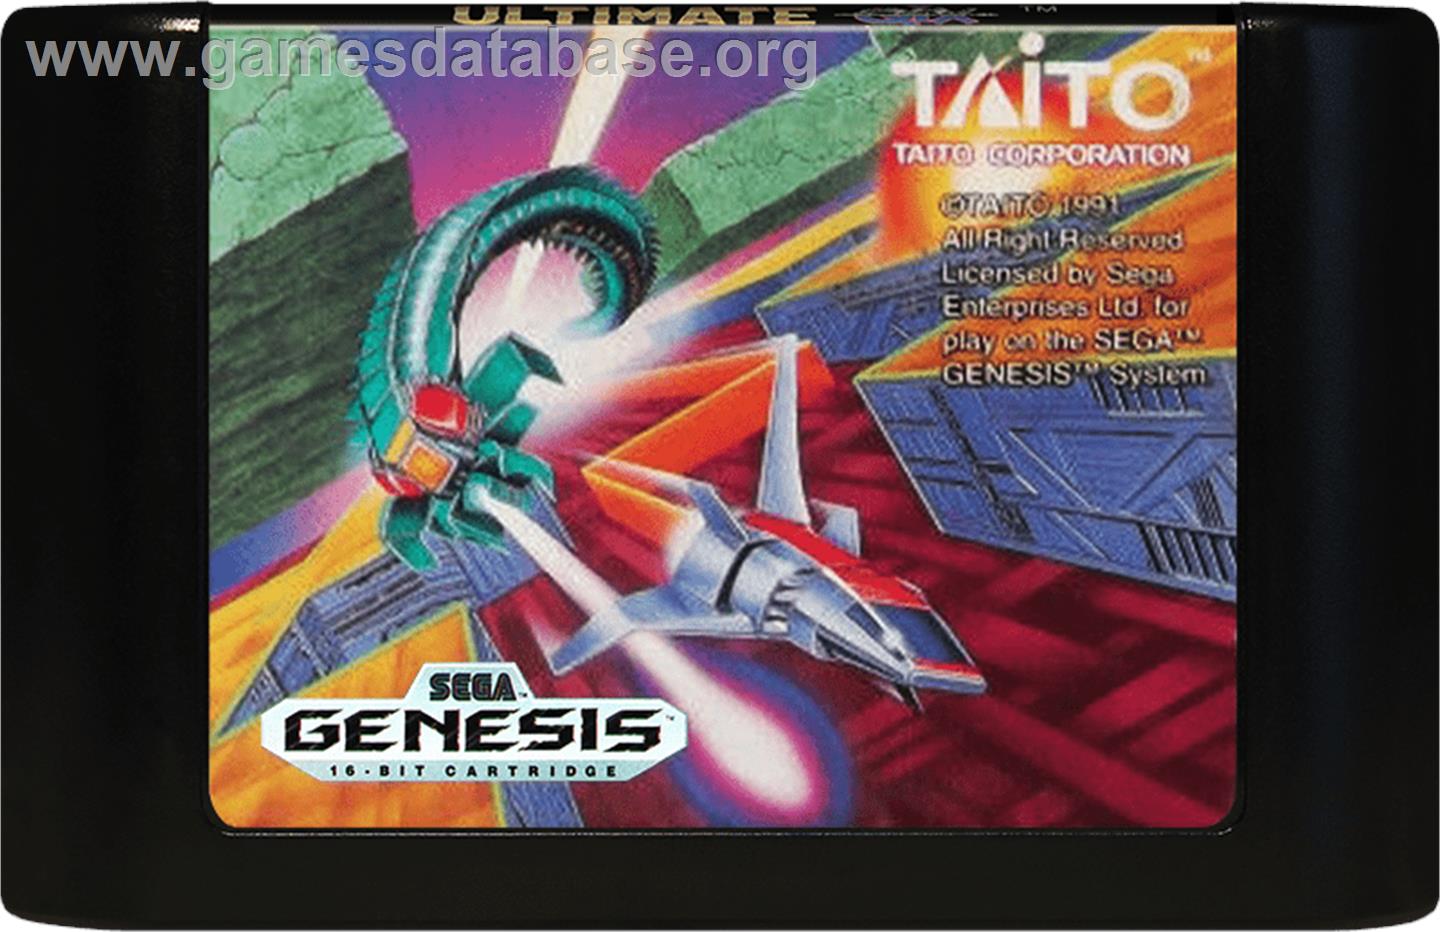 Ultimate Qix - Sega Genesis - Artwork - Cartridge